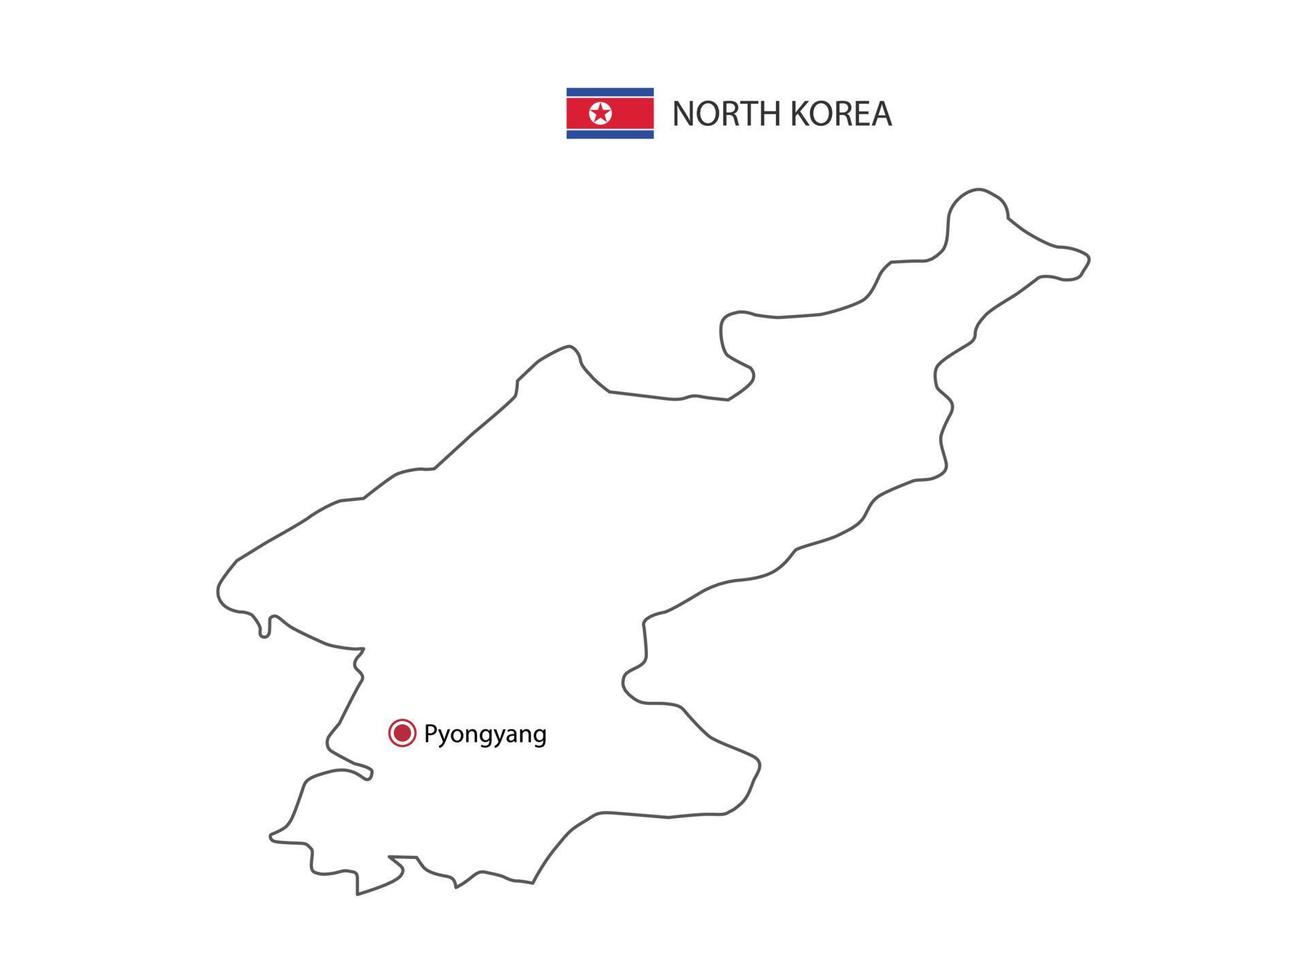 dibujar a mano el vector de línea negra delgada del mapa de corea del norte con la ciudad capital pyongyang sobre fondo blanco.